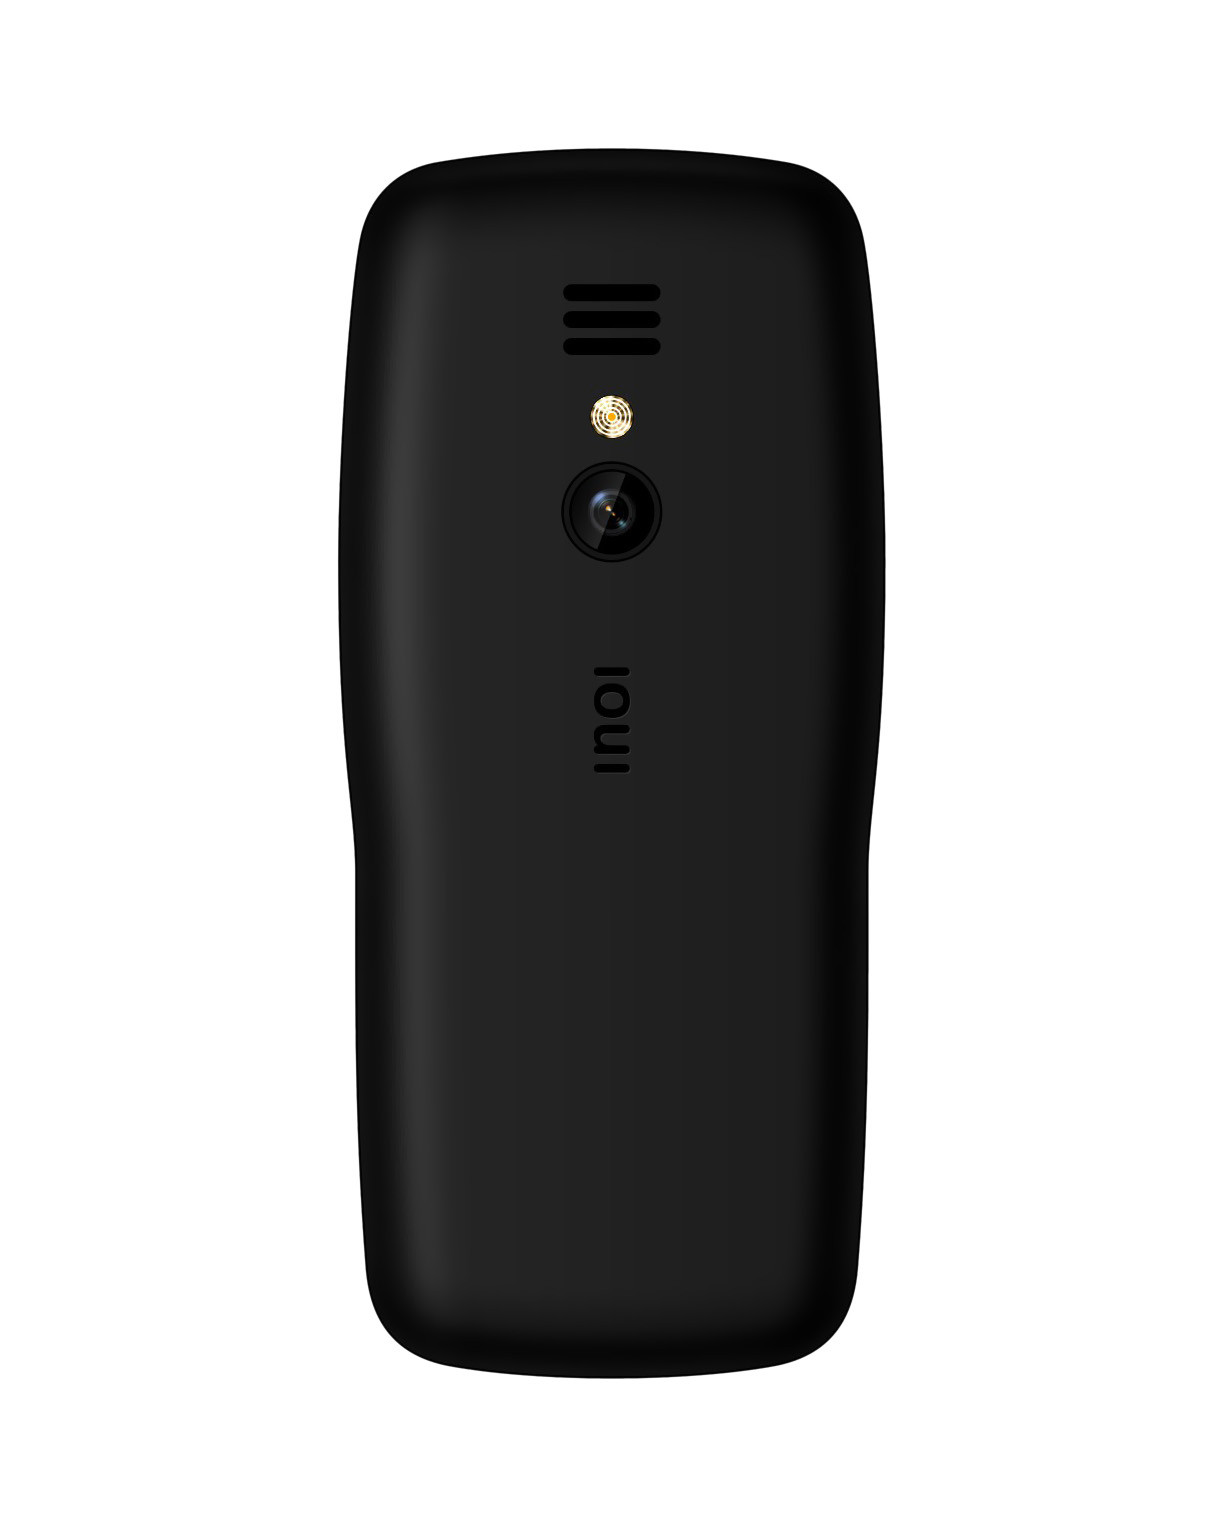 Мобильный телефон INOI 105, цена. Цвет черный